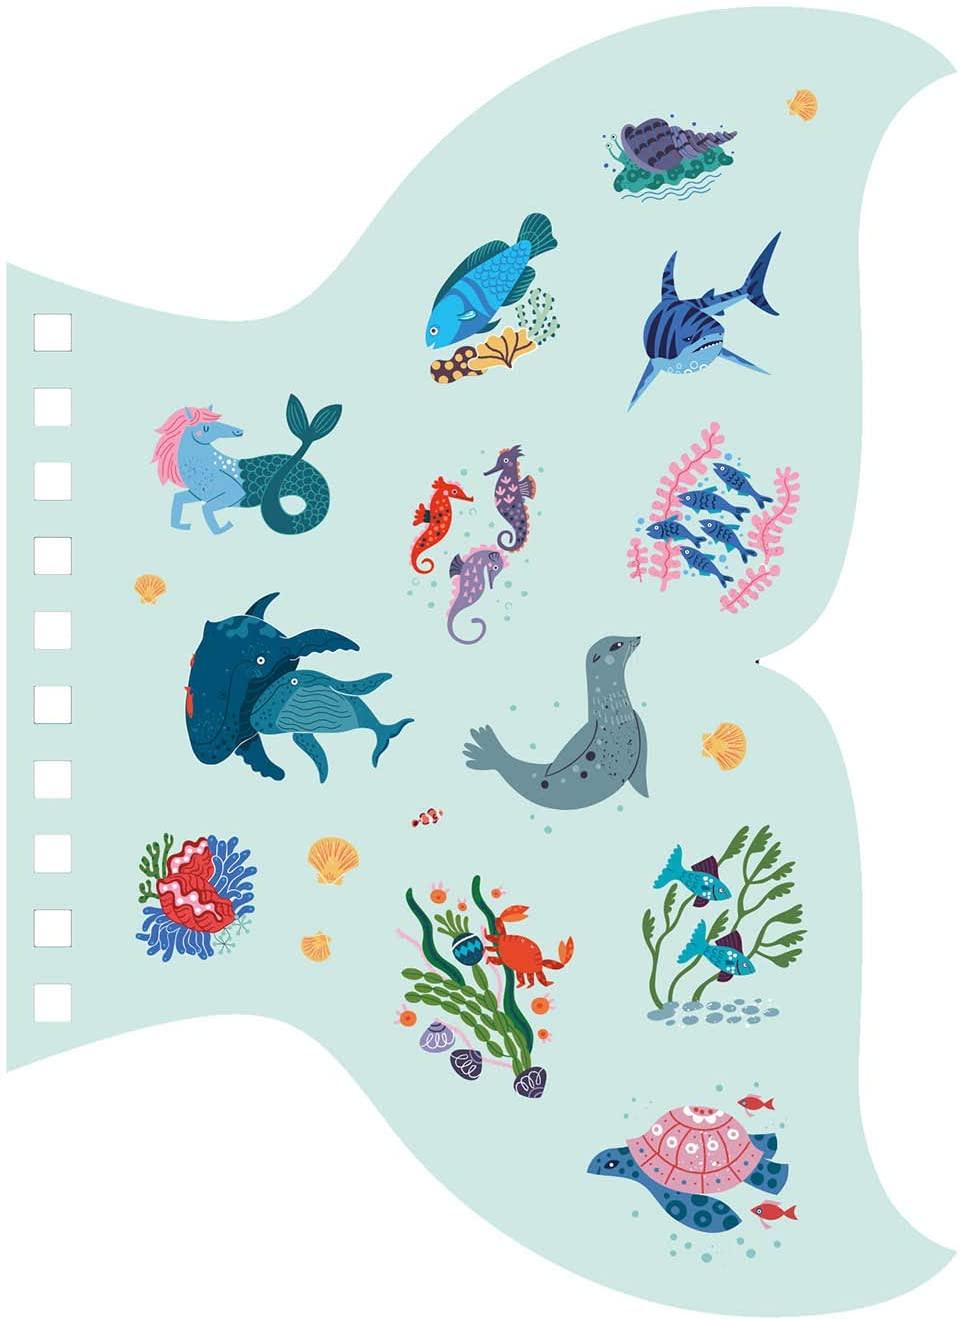 Auzou: Ocean sticker notebook